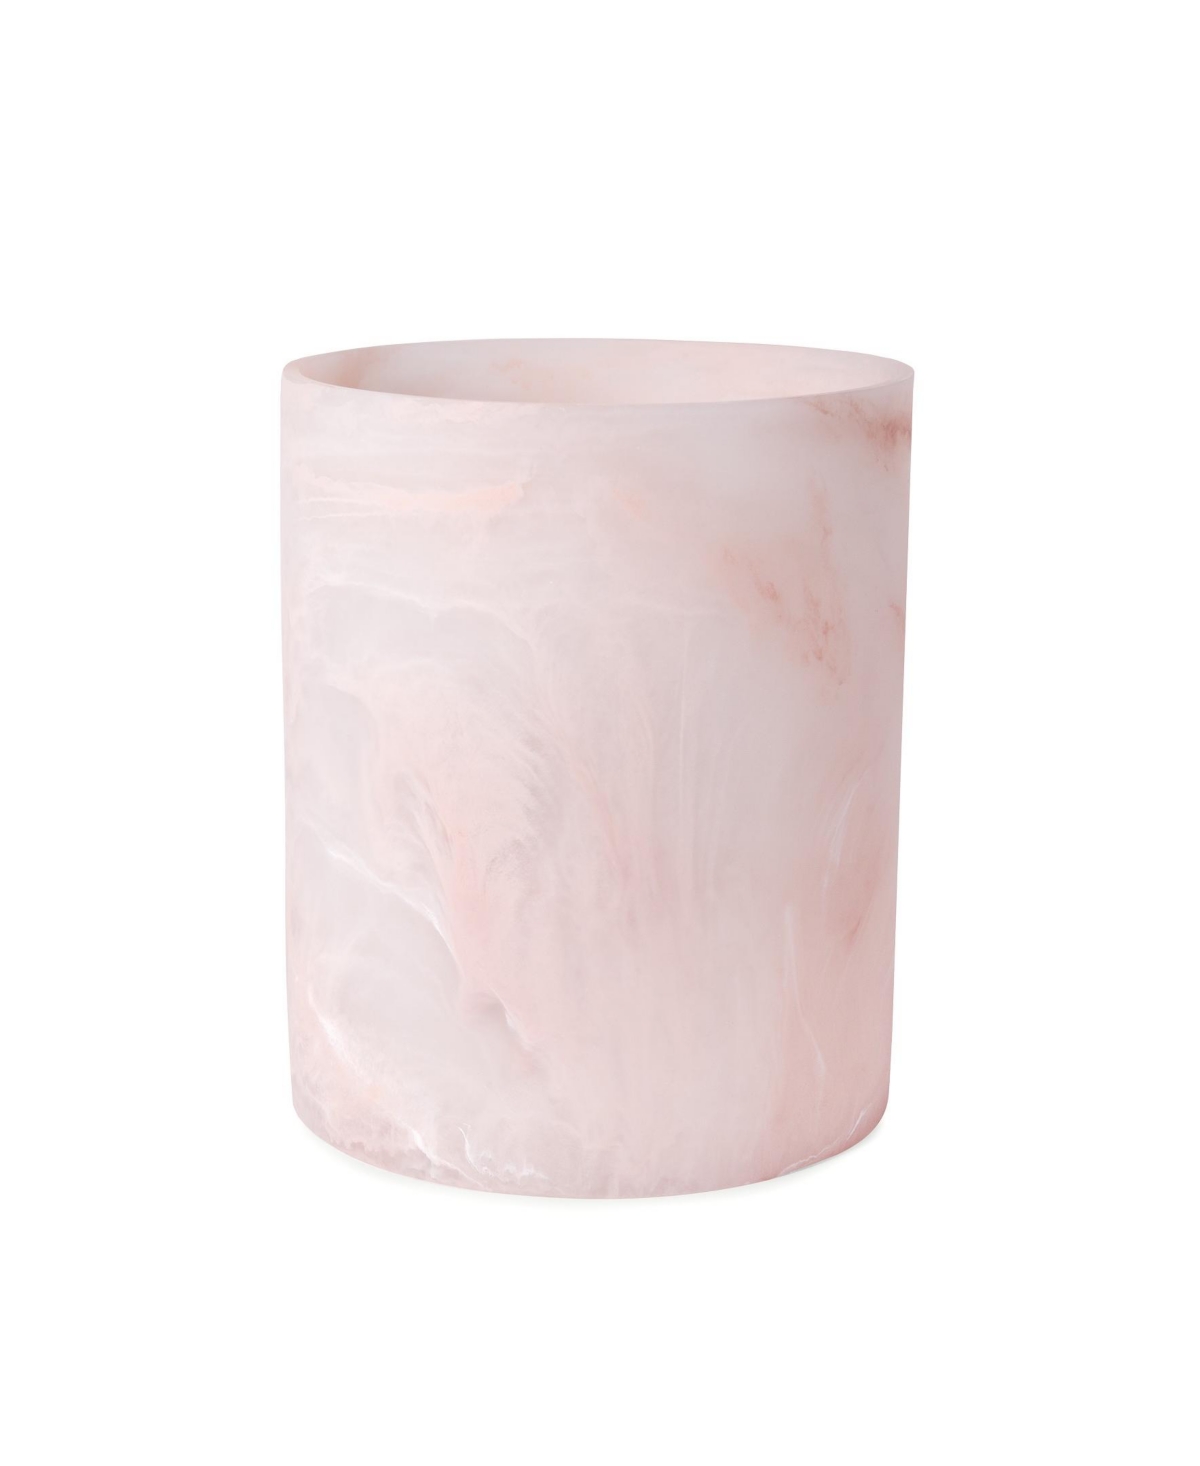 Cassadecor Rose Resin Waste Basket In Pale Pink